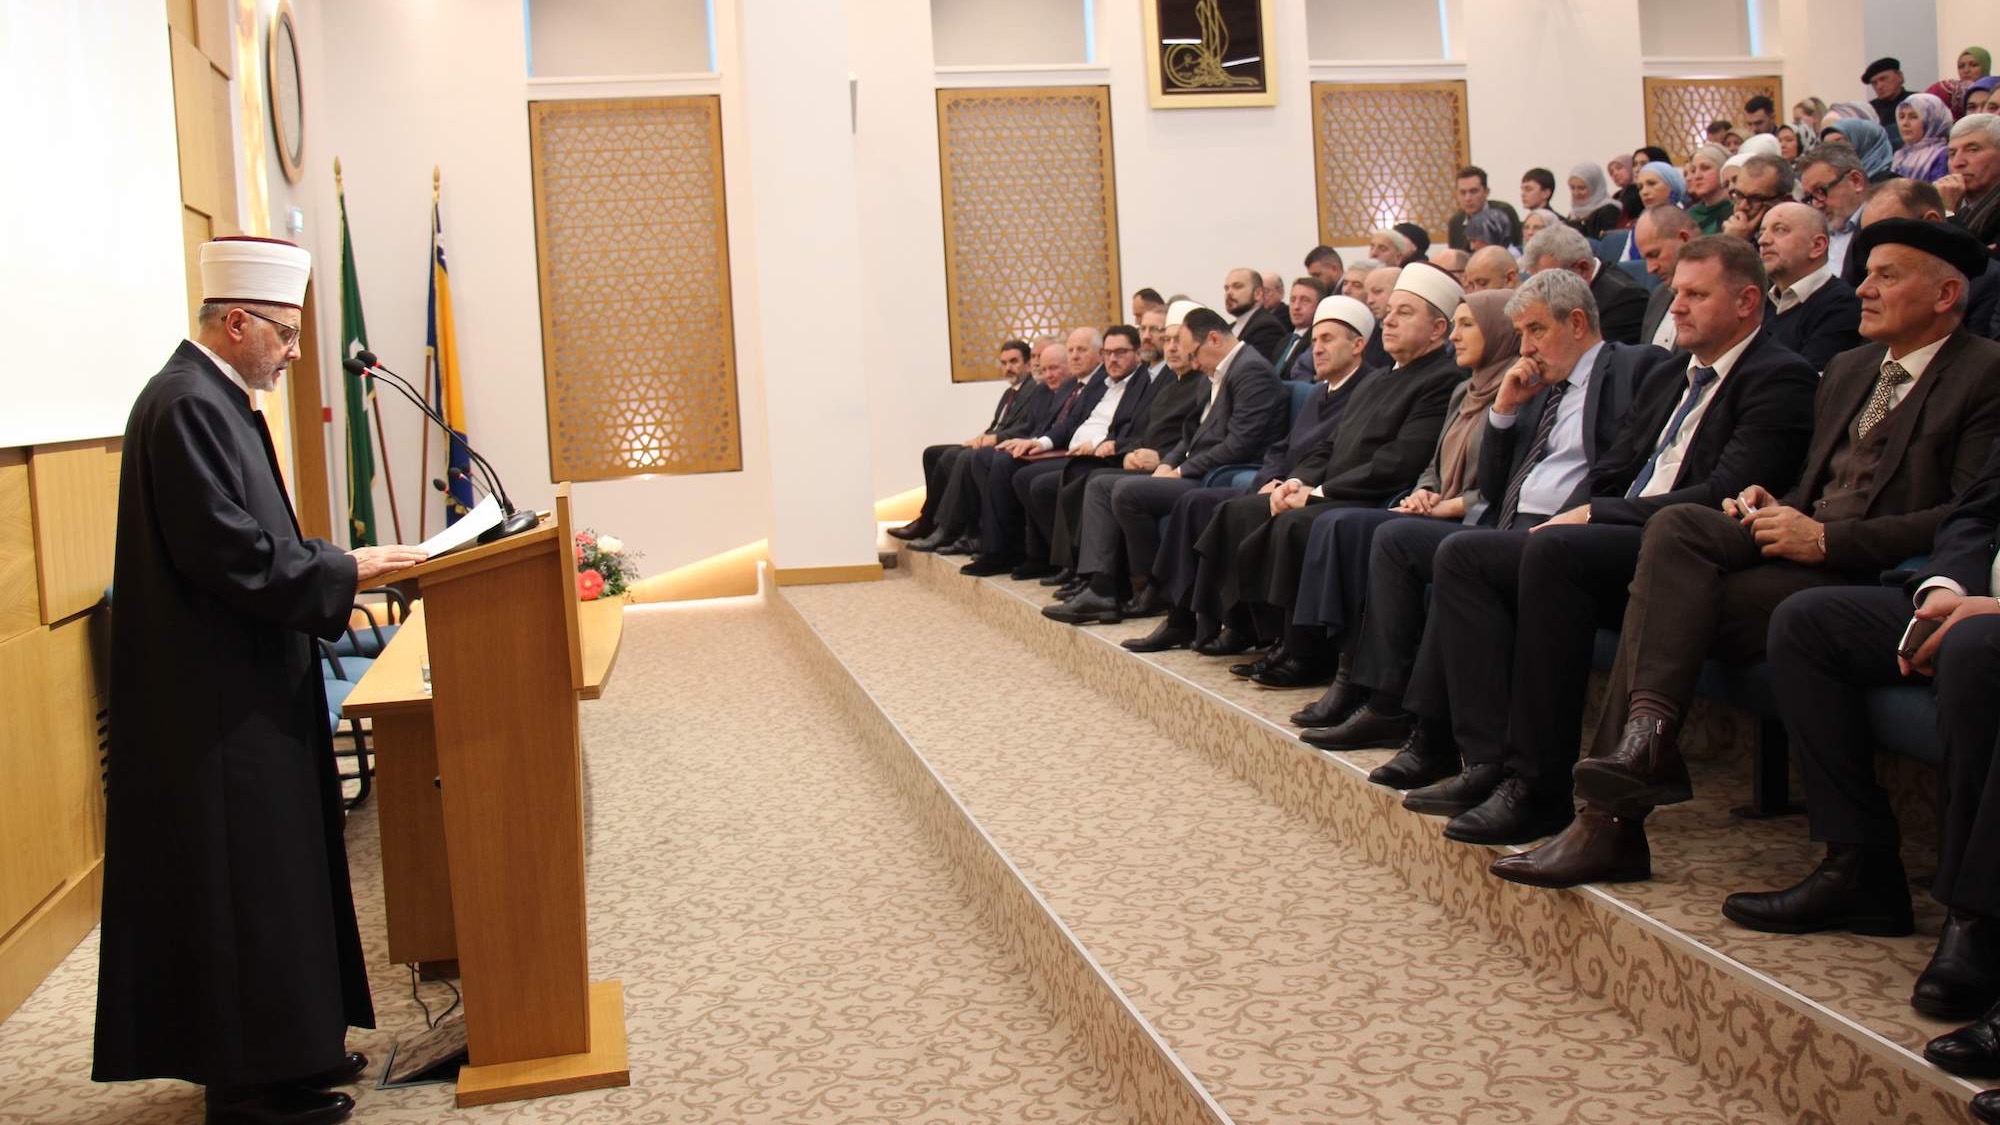 Održana svečana akademija povodom 486. godišnjice Gazi Husrev-begove medrese (VIDEO)